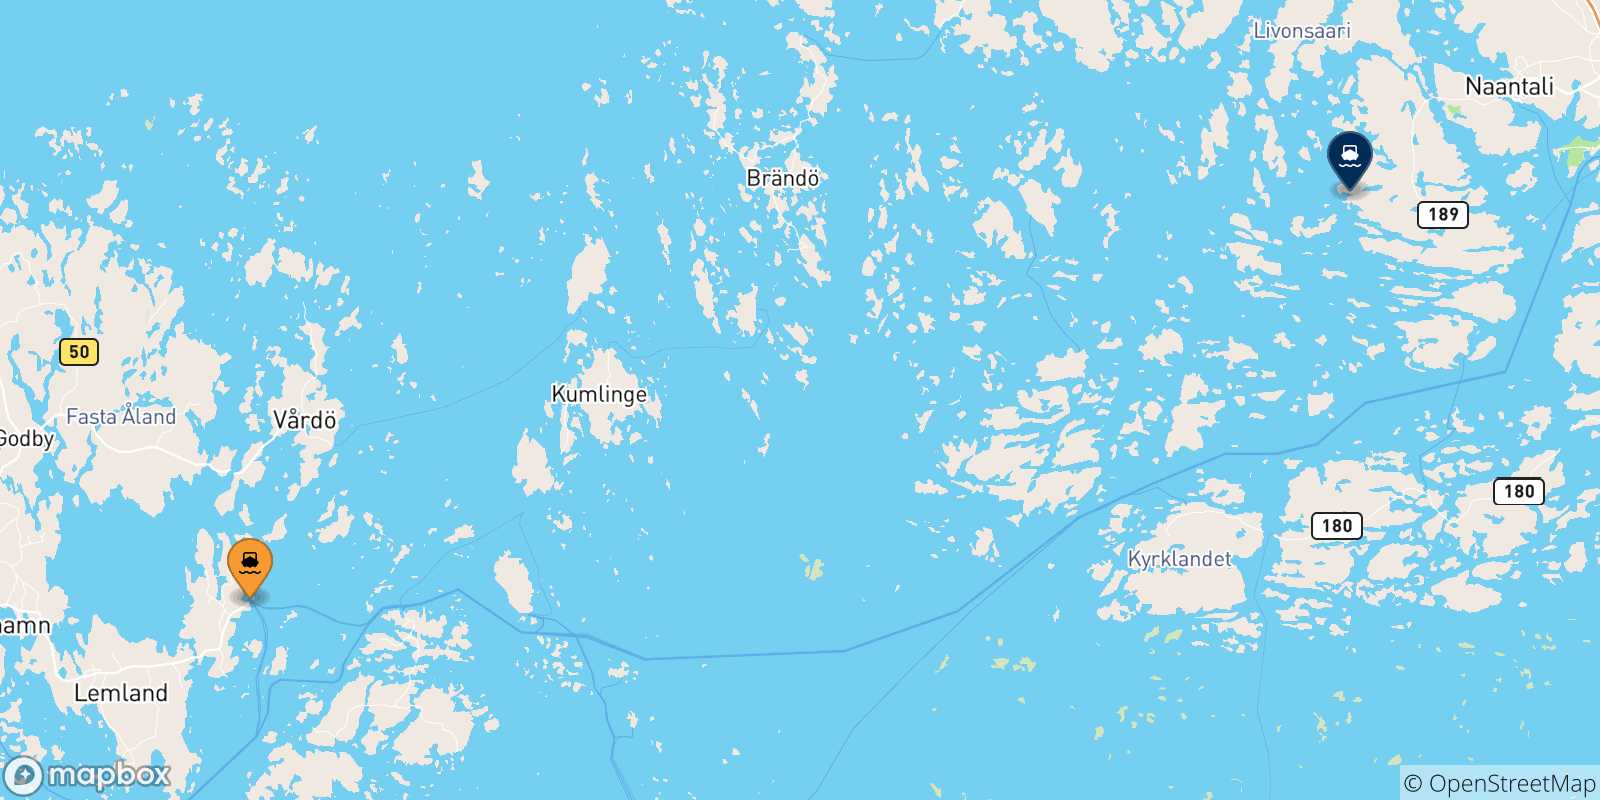 Carte des traversées possibles entre la Finlande et Naantali